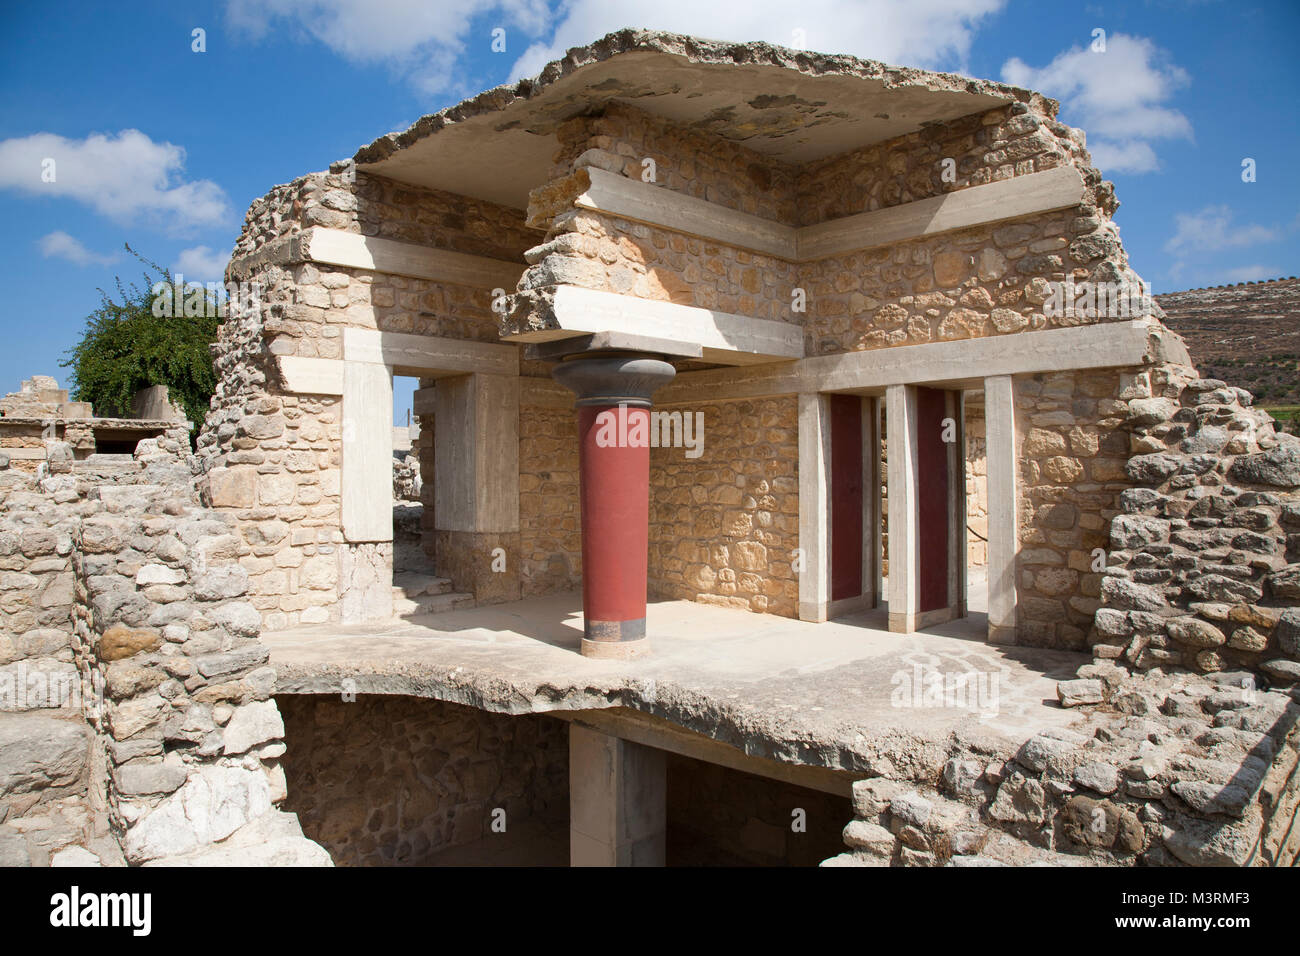 Entrée sud du palais de Knossos, site archéologique, l'île de Crète, Grèce, Europe Banque D'Images